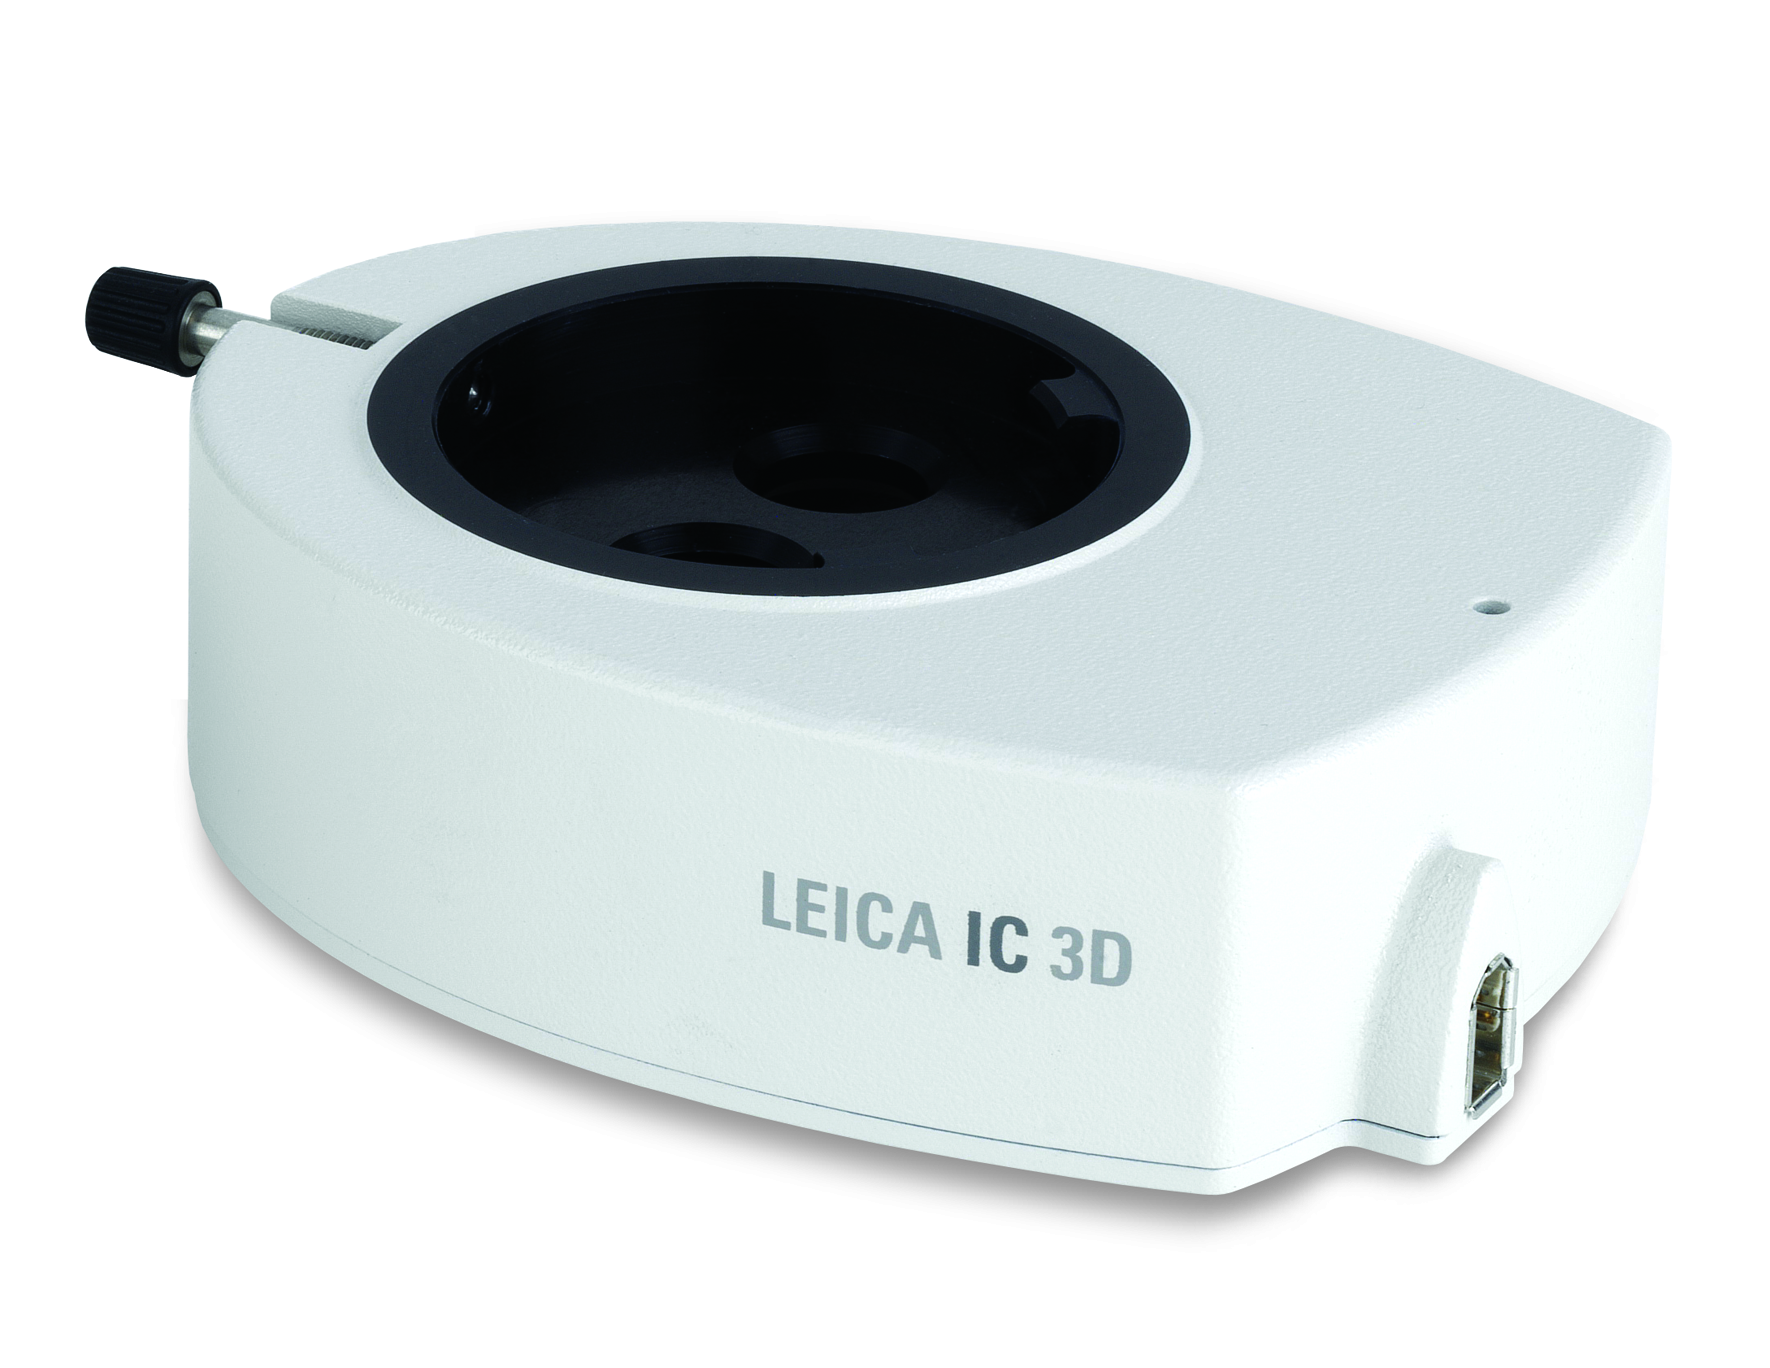 Com a Leica IC 3D, o usuário tem uma imagem 3D completa de amostras microscópicas vista nas oculares e em tela.